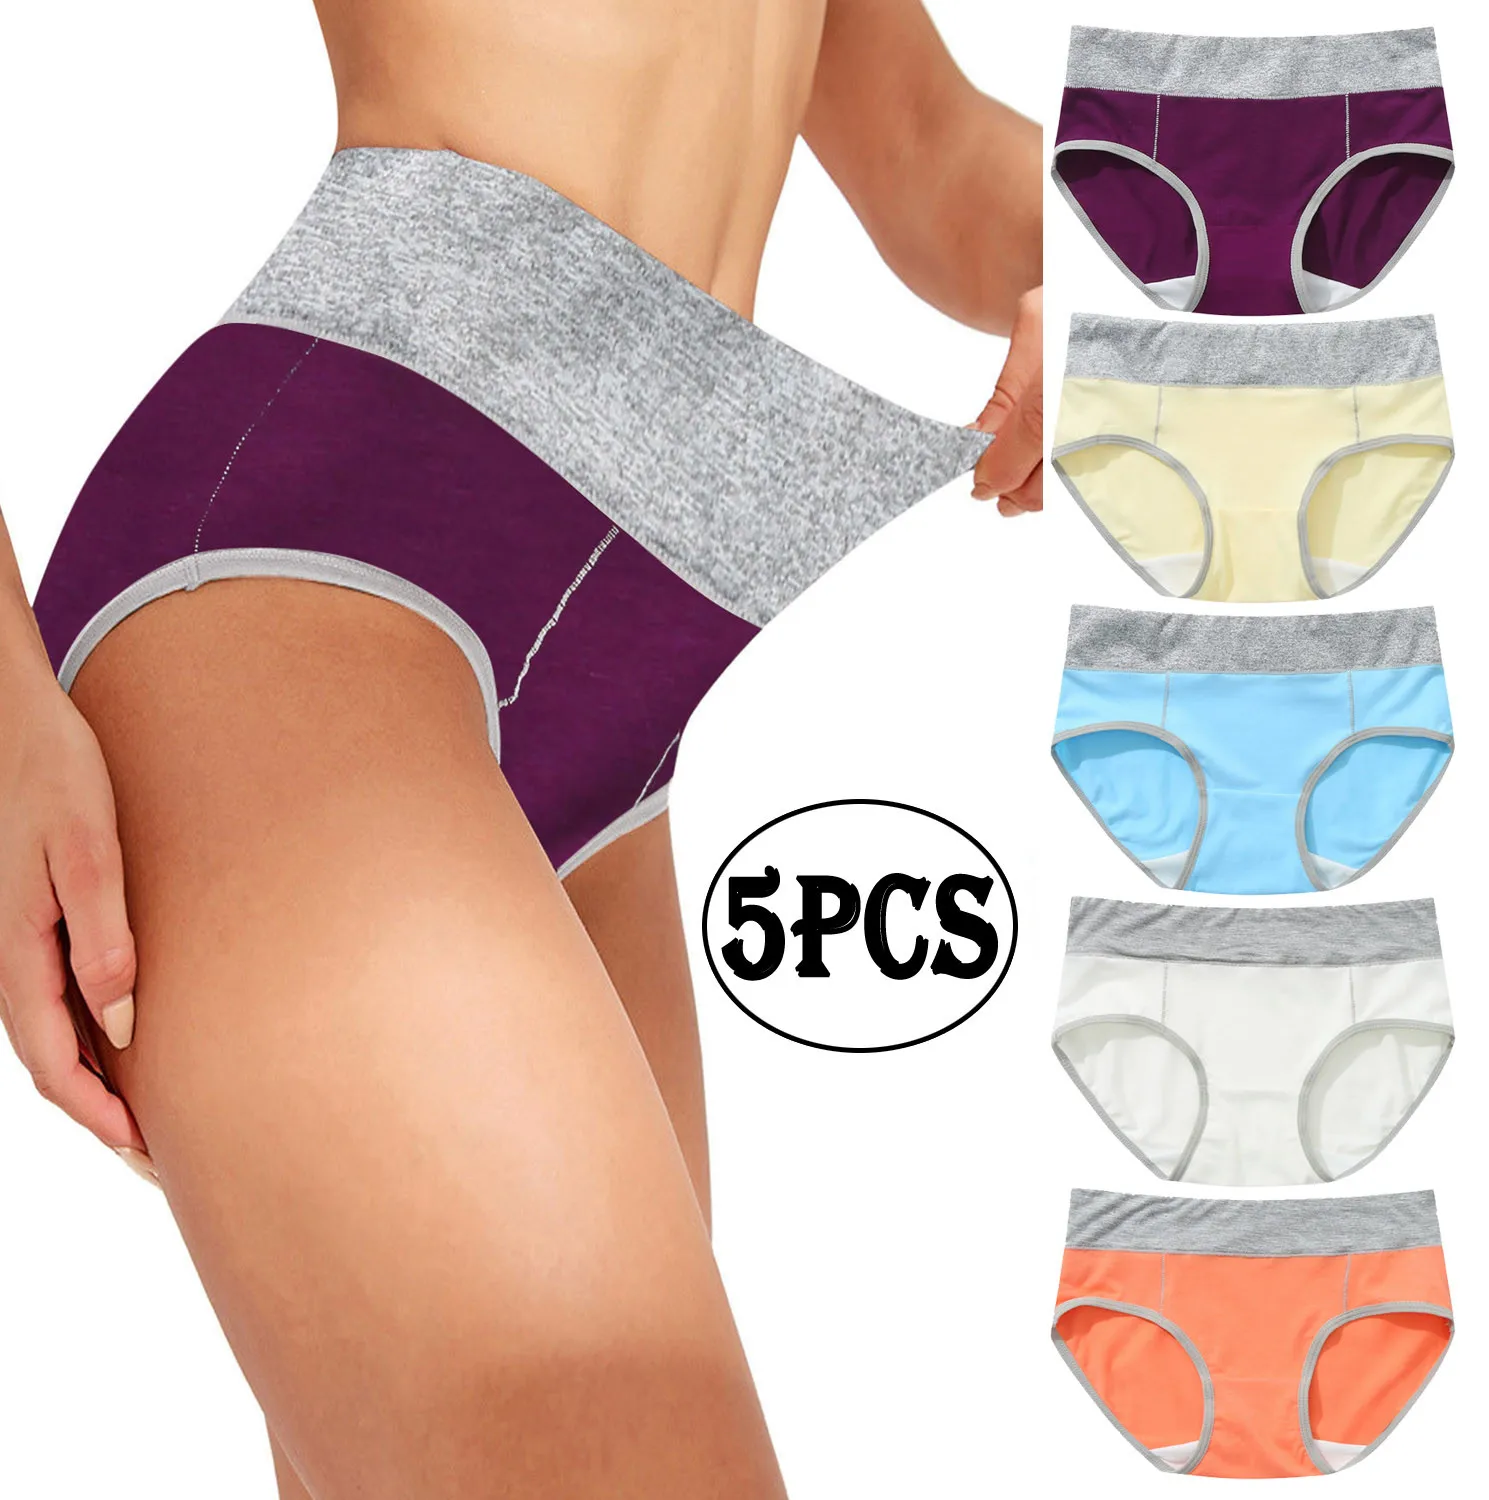 

5pcs Women Patchwork Cotton Briefs Panties Seamless Underwear Female Lingerie High Rise bragas para mujeres culottes pour femmes